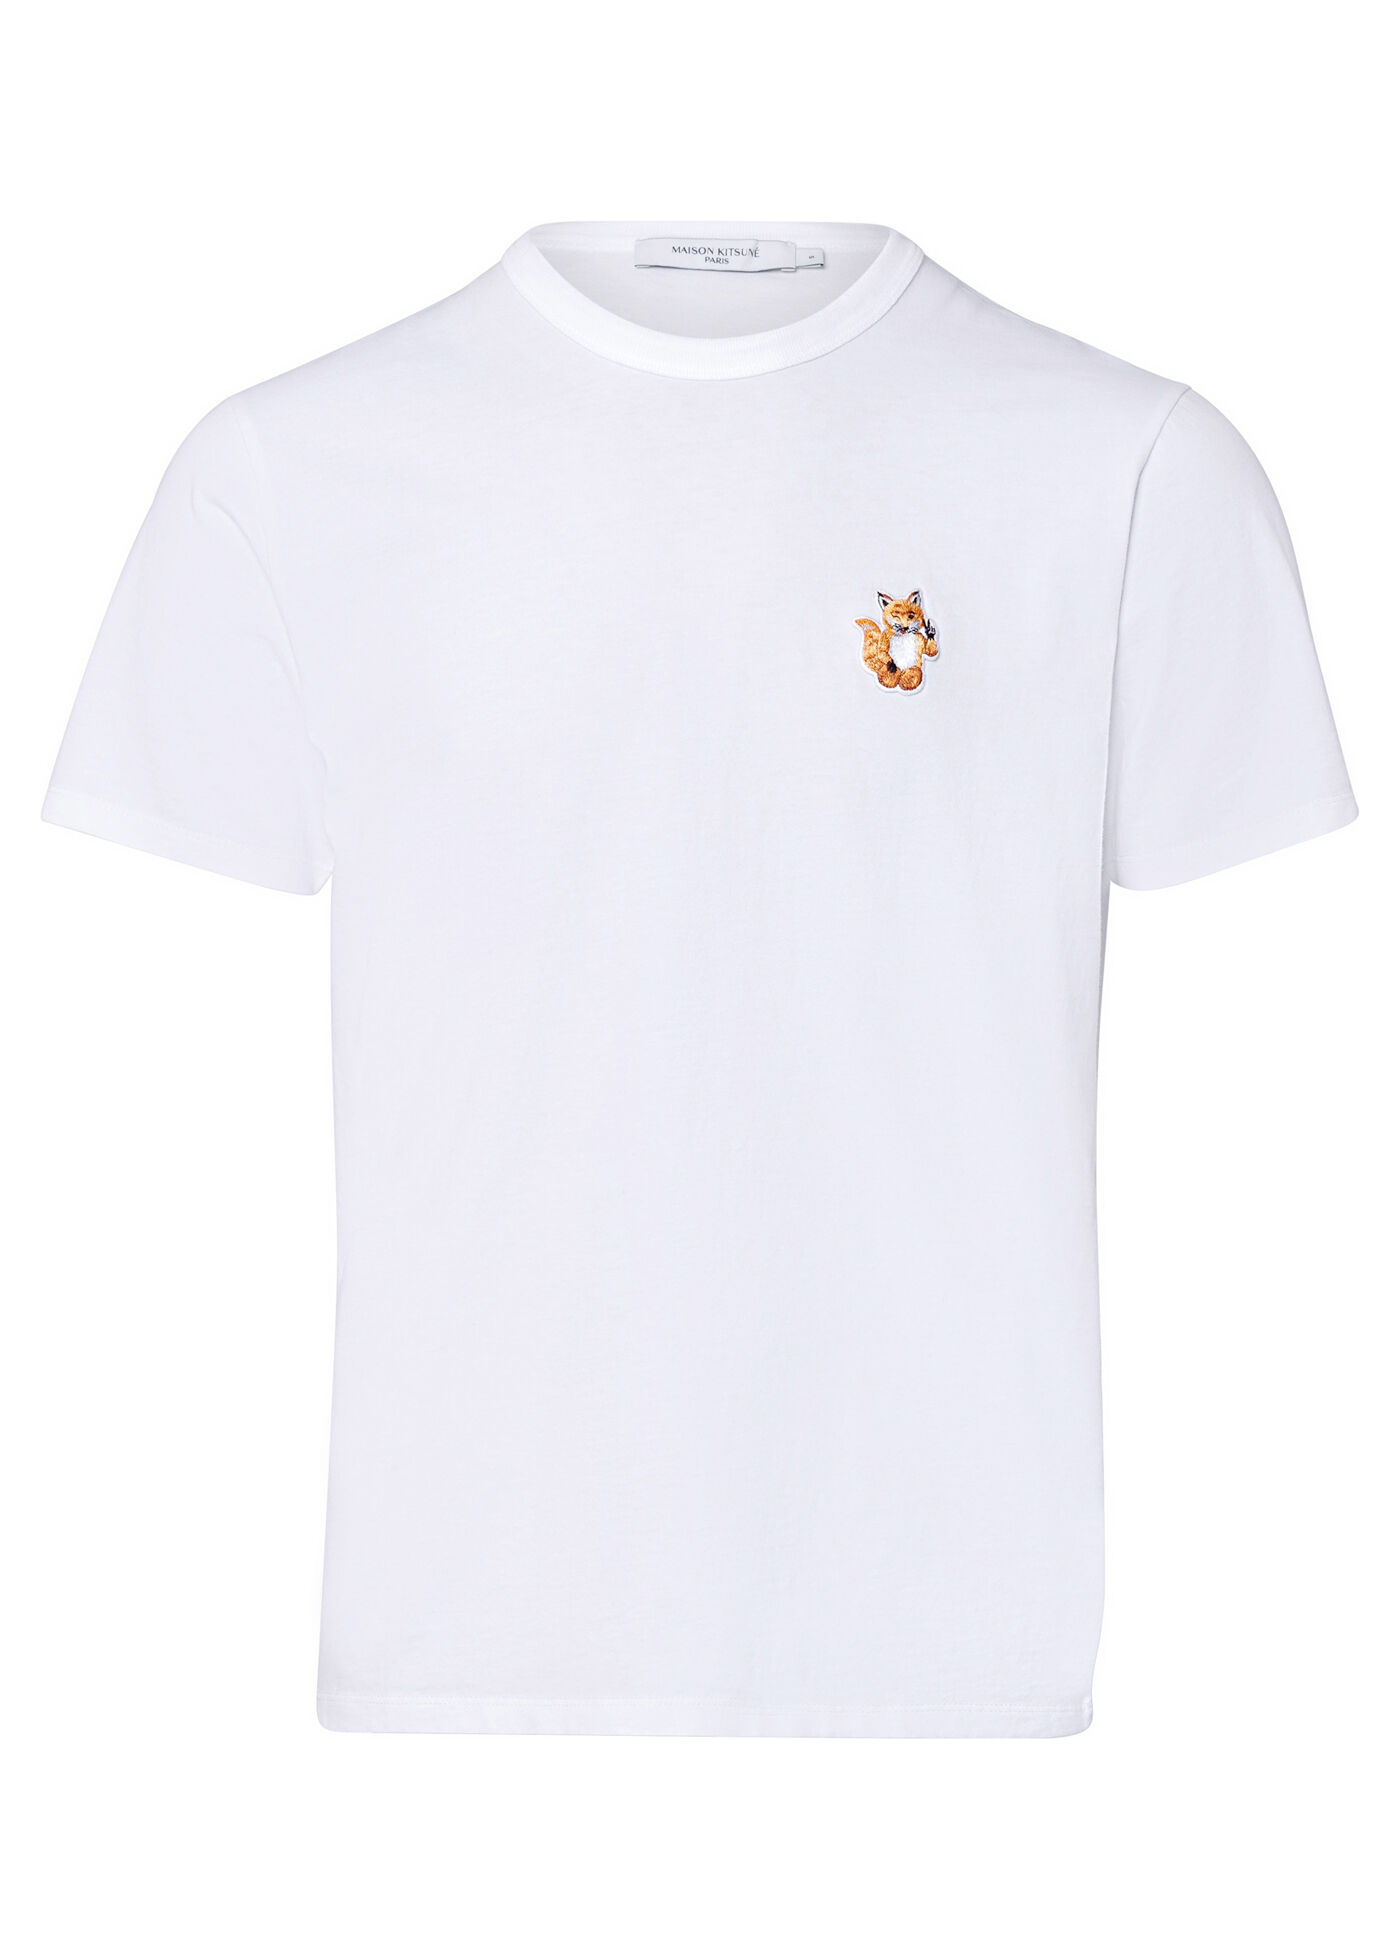 MAISON KITSUNÉ - ALL RIGHT FOX PATCH CLASSIC TEE-SHIRT - T-Shirts 